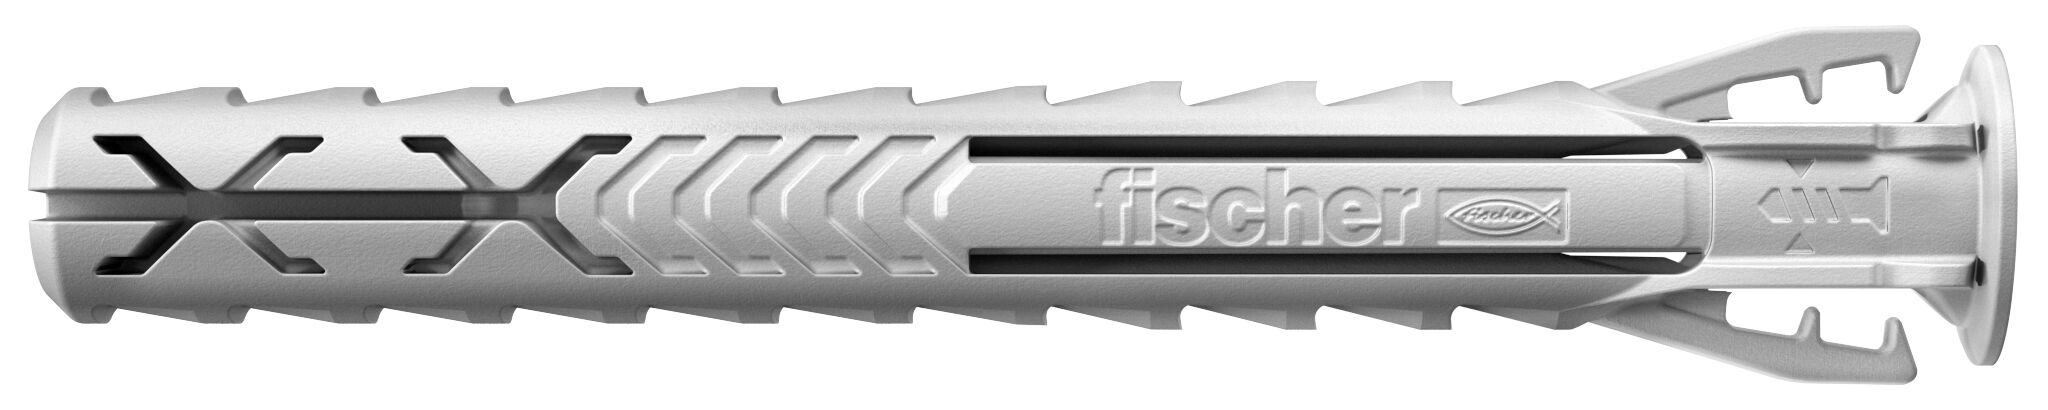 fischer Expansion plug SX Plus 8 x 65